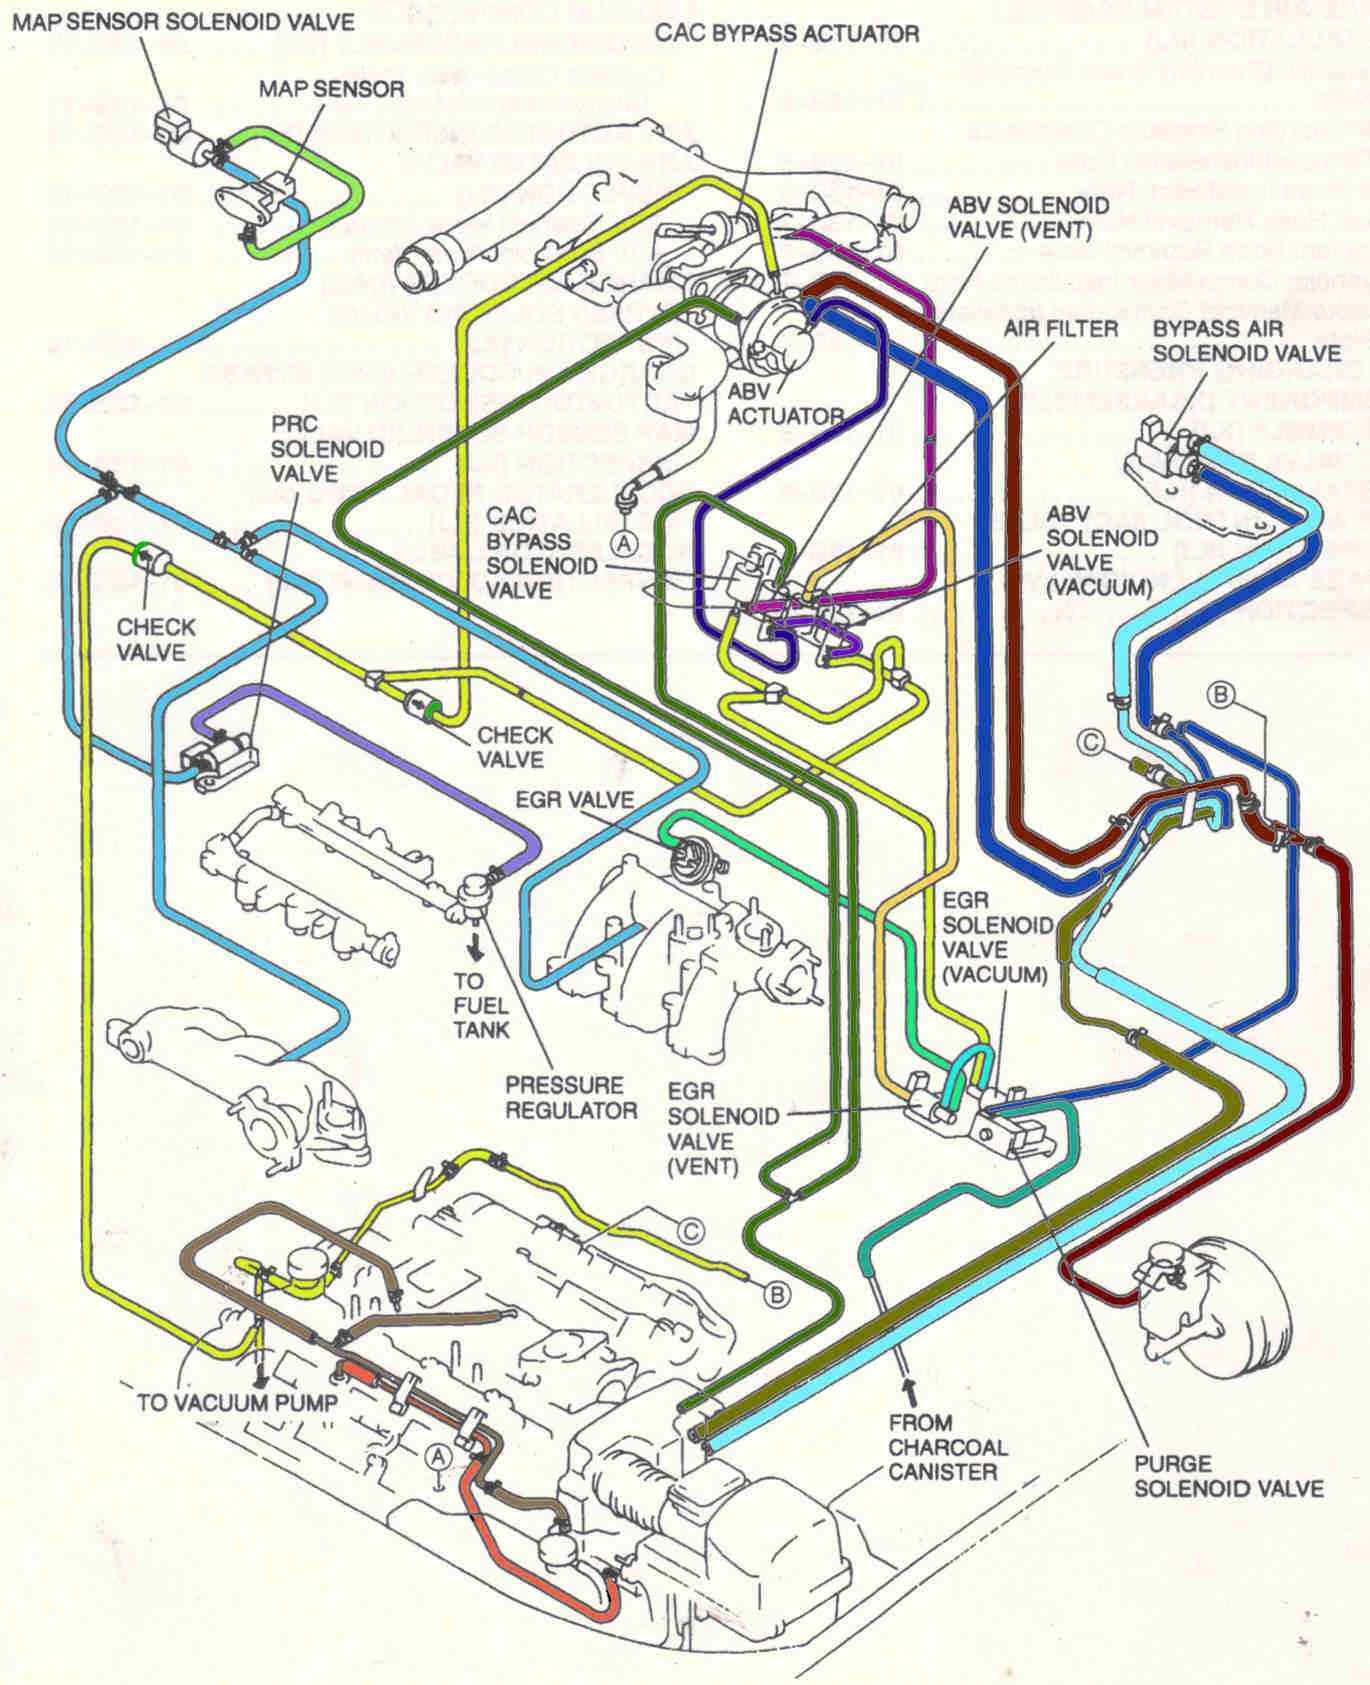 Engine Vacuum Hose Diagram 2000 Mazda Millenia S Rmp Won T Pass 2000 Mazda forum Mazda Of Engine Vacuum Hose Diagram